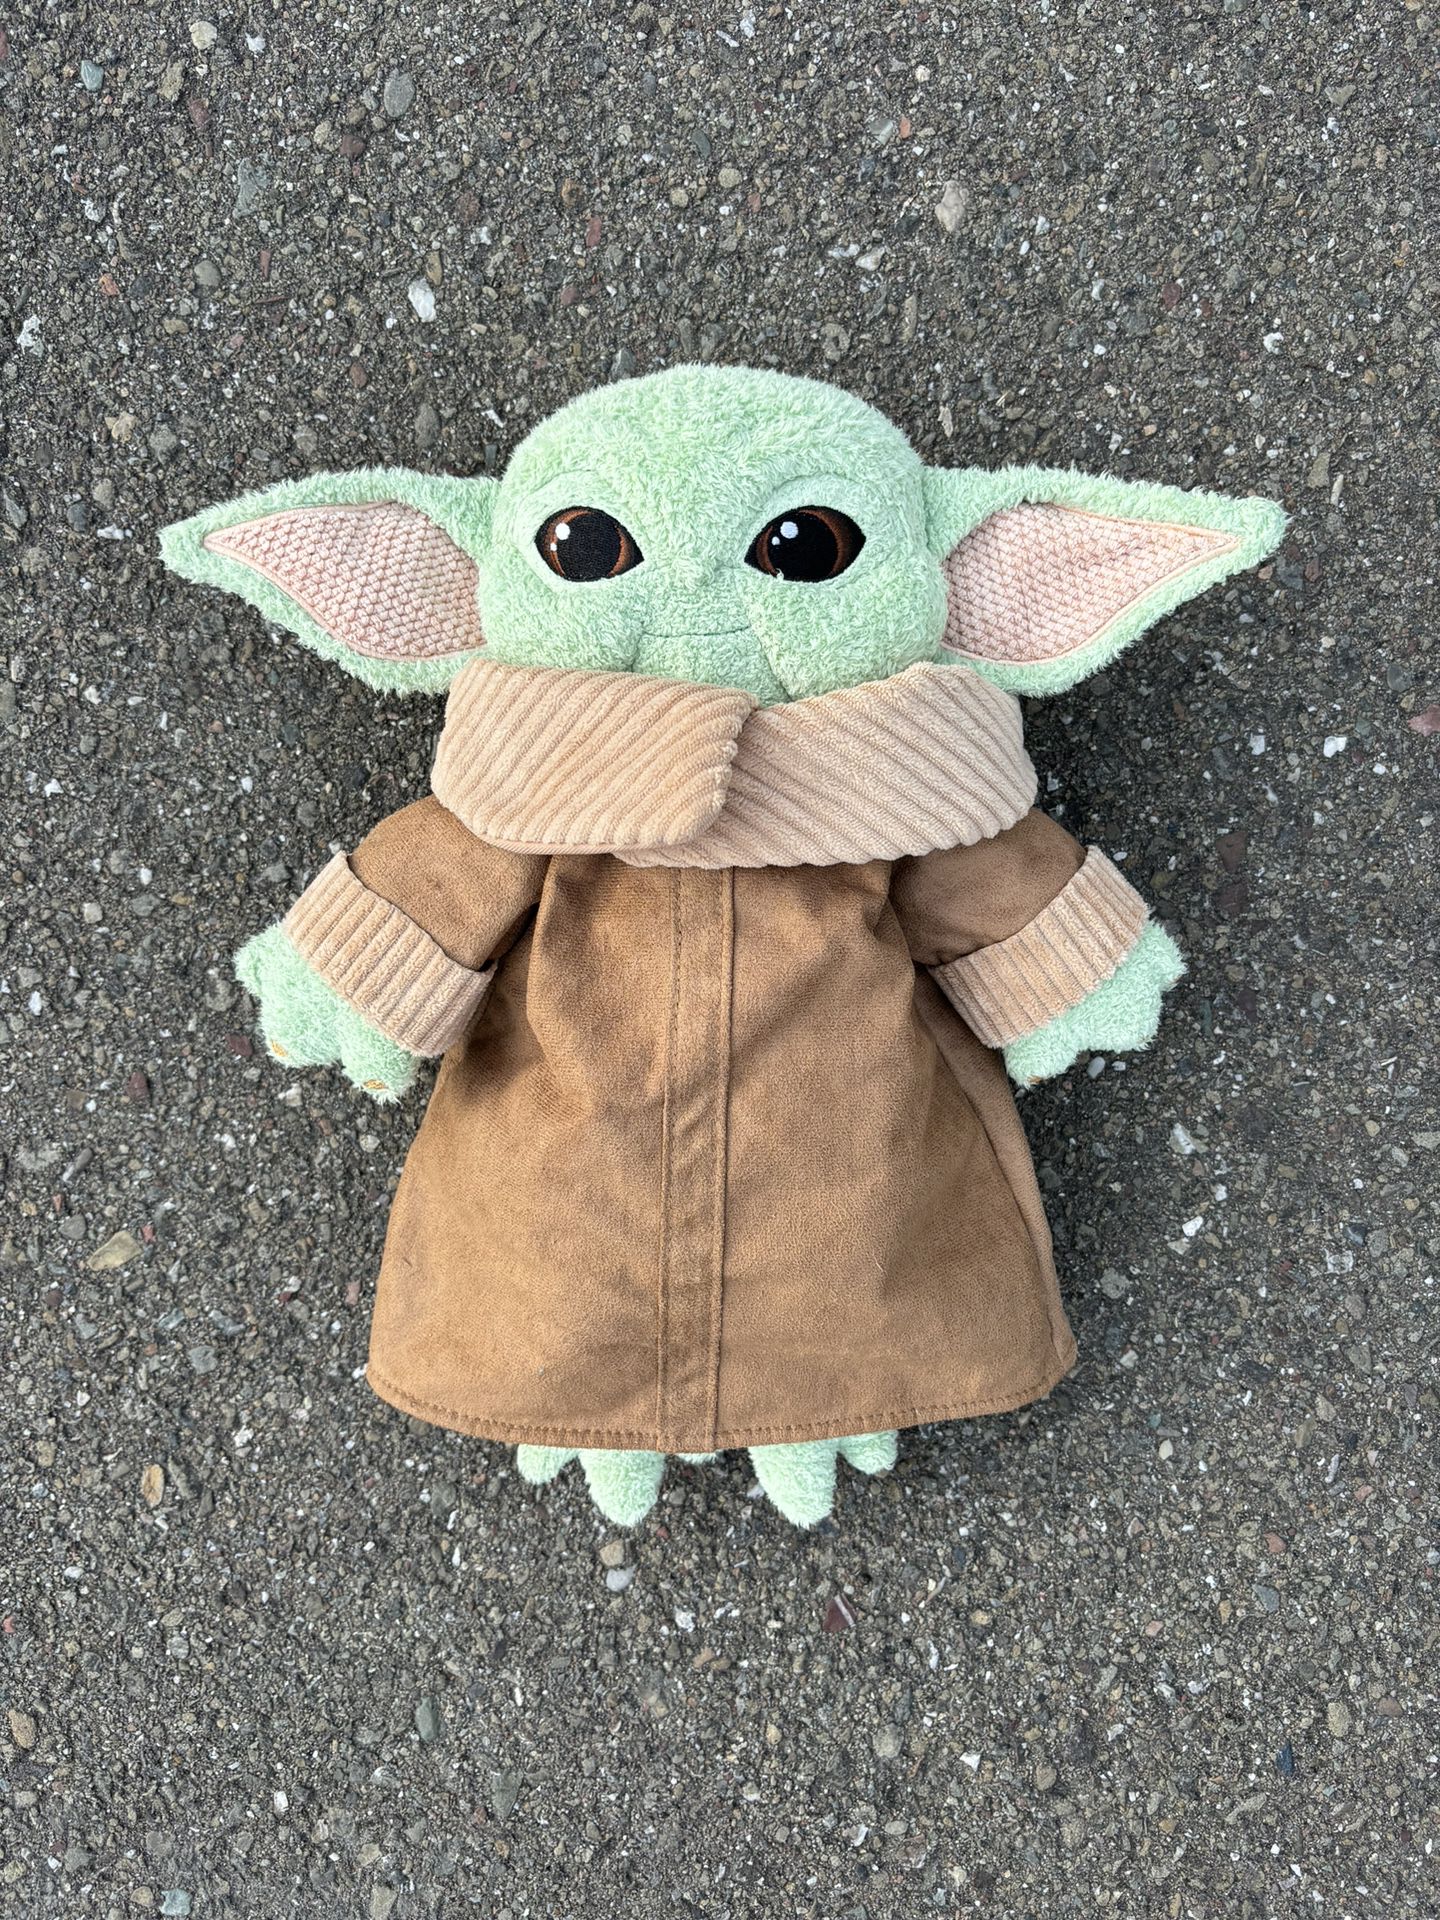 Star Wars Baby Yoda Grogu Plush